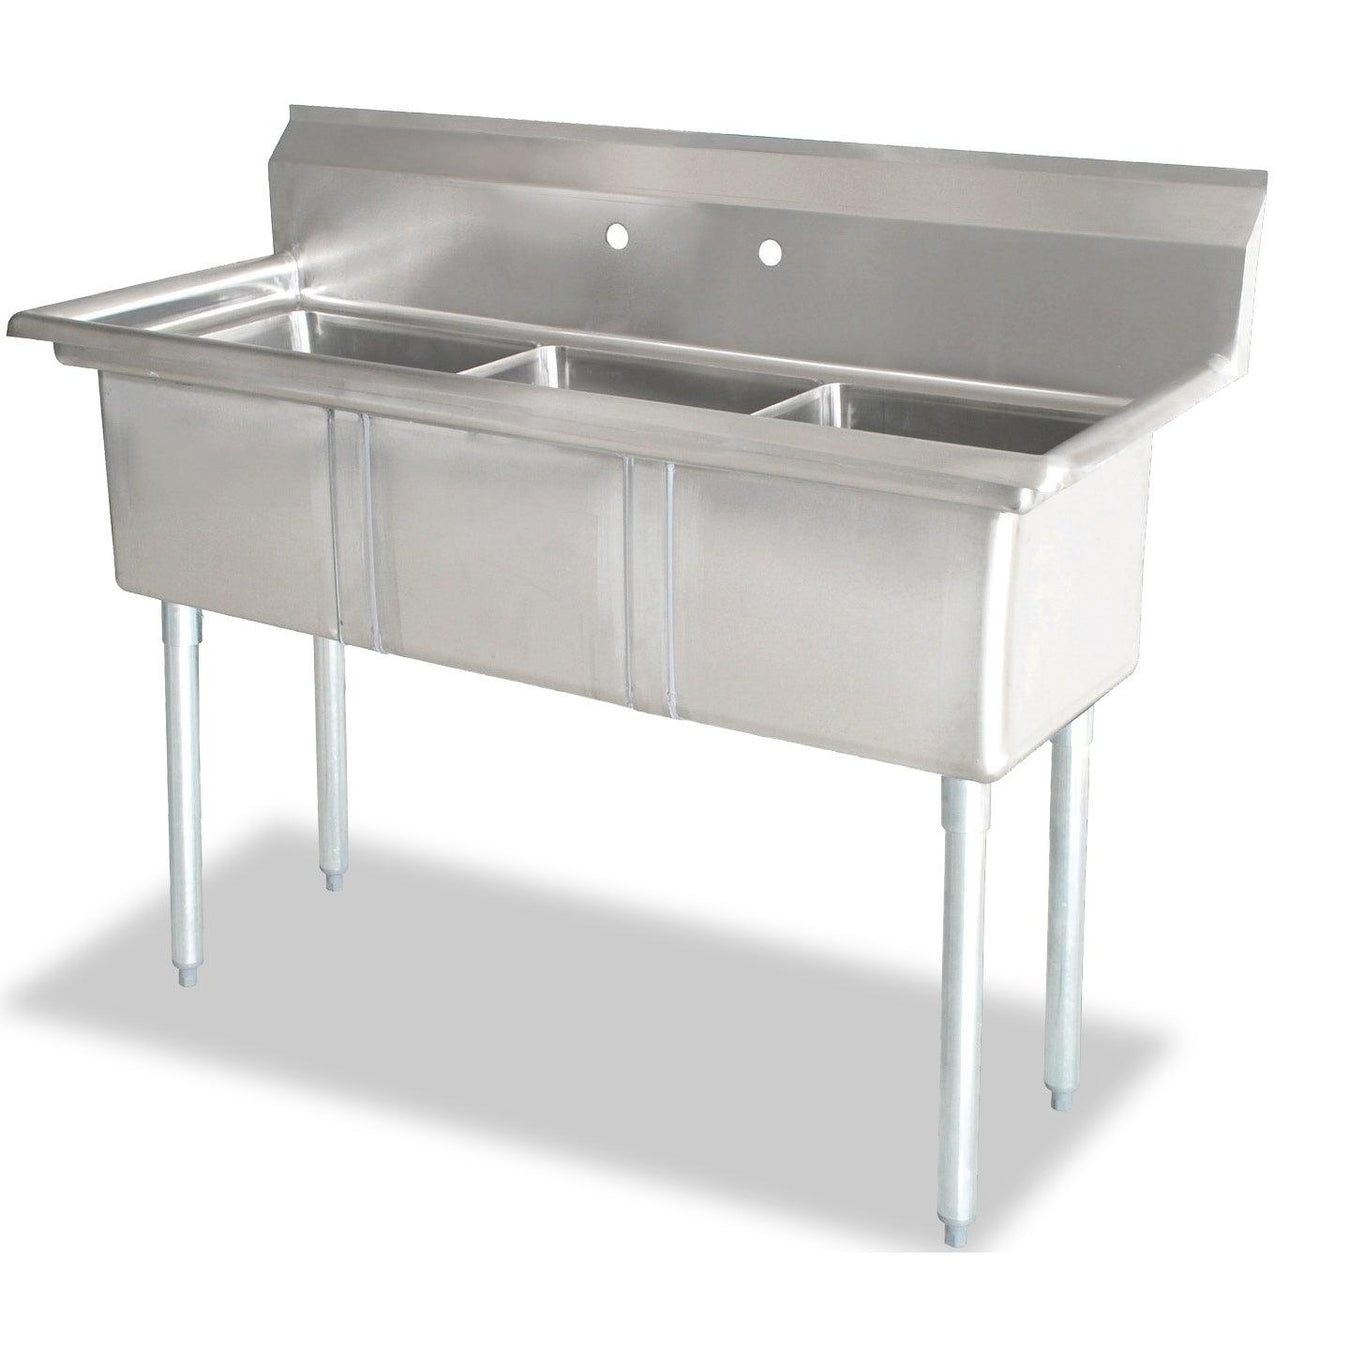 Nella 18" x 18" x 11" Three Tub Sink with Centre Drain and No Drain Board - 43765 - Nella Online